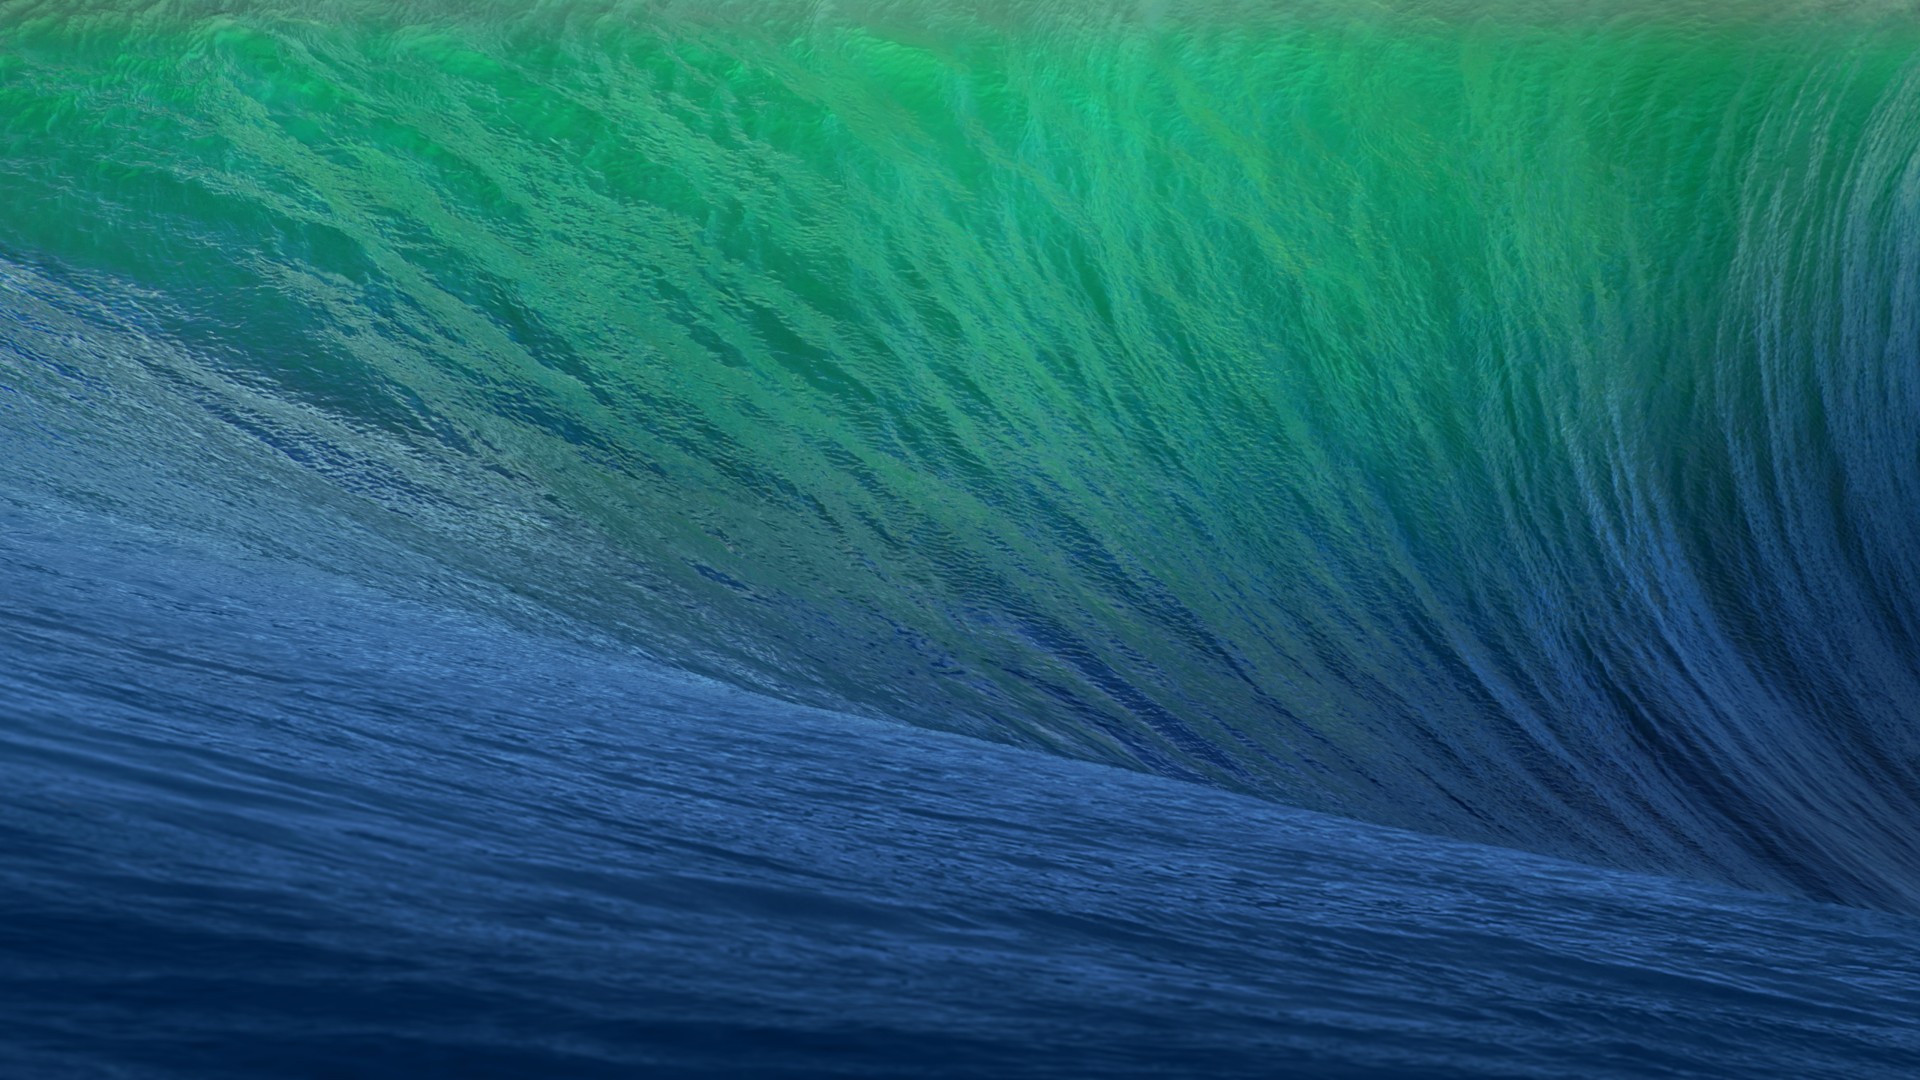 OSX, 5k, 4k, 8k, волна, голубая, море, океан, OSX, 5k, 4k wallpaper, 8k, Wave, Blue, Big (horizontal)